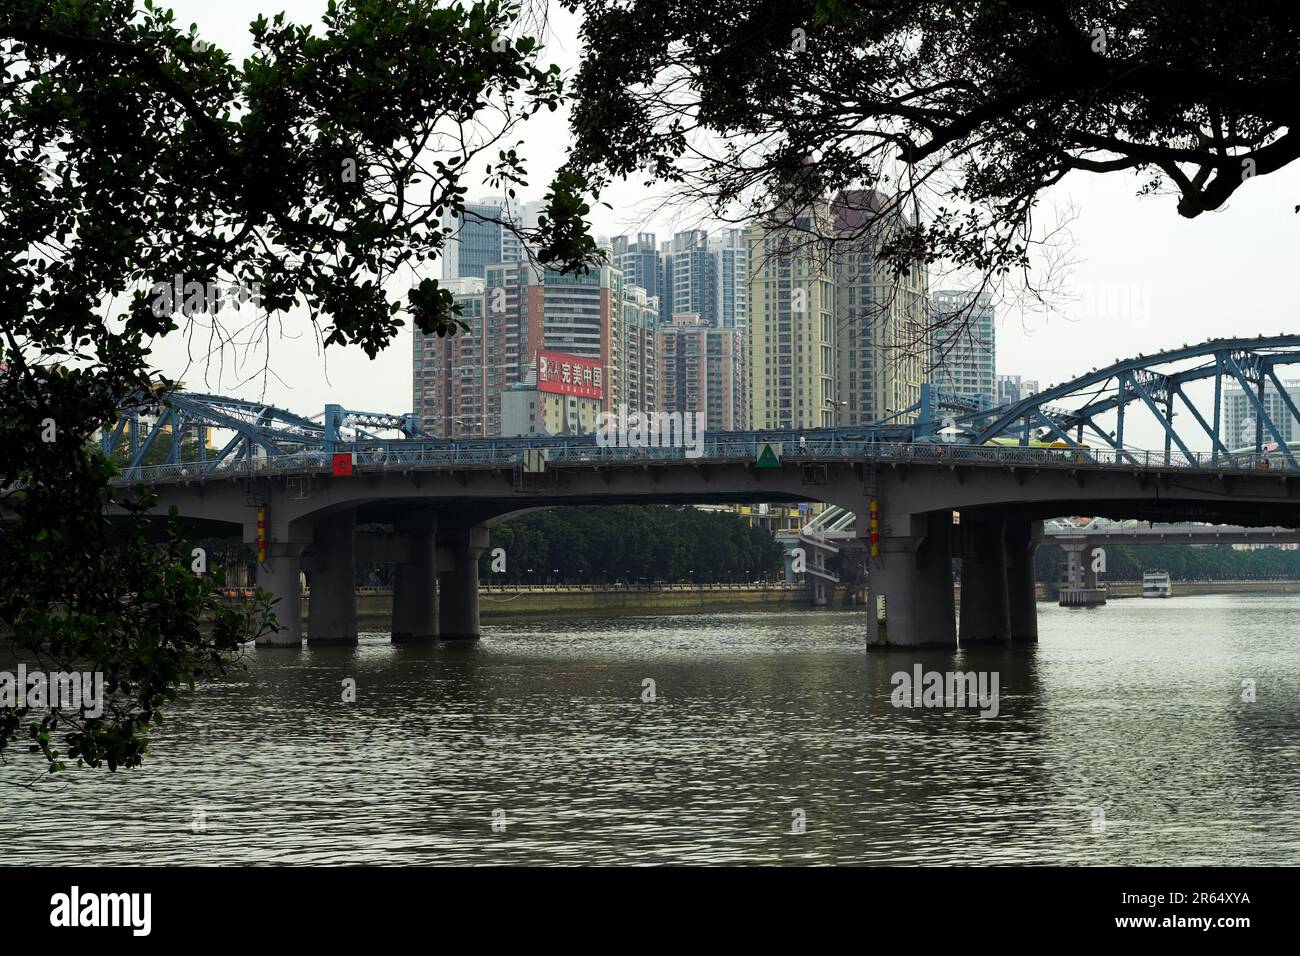 广州市 中國 Guangzhou, China; Skyscrapers on the banks of the Pearl River; Wolkenkratzer am Ufer des Perlflusses; Rascacielos a orillas del río Pearl Stock Photo